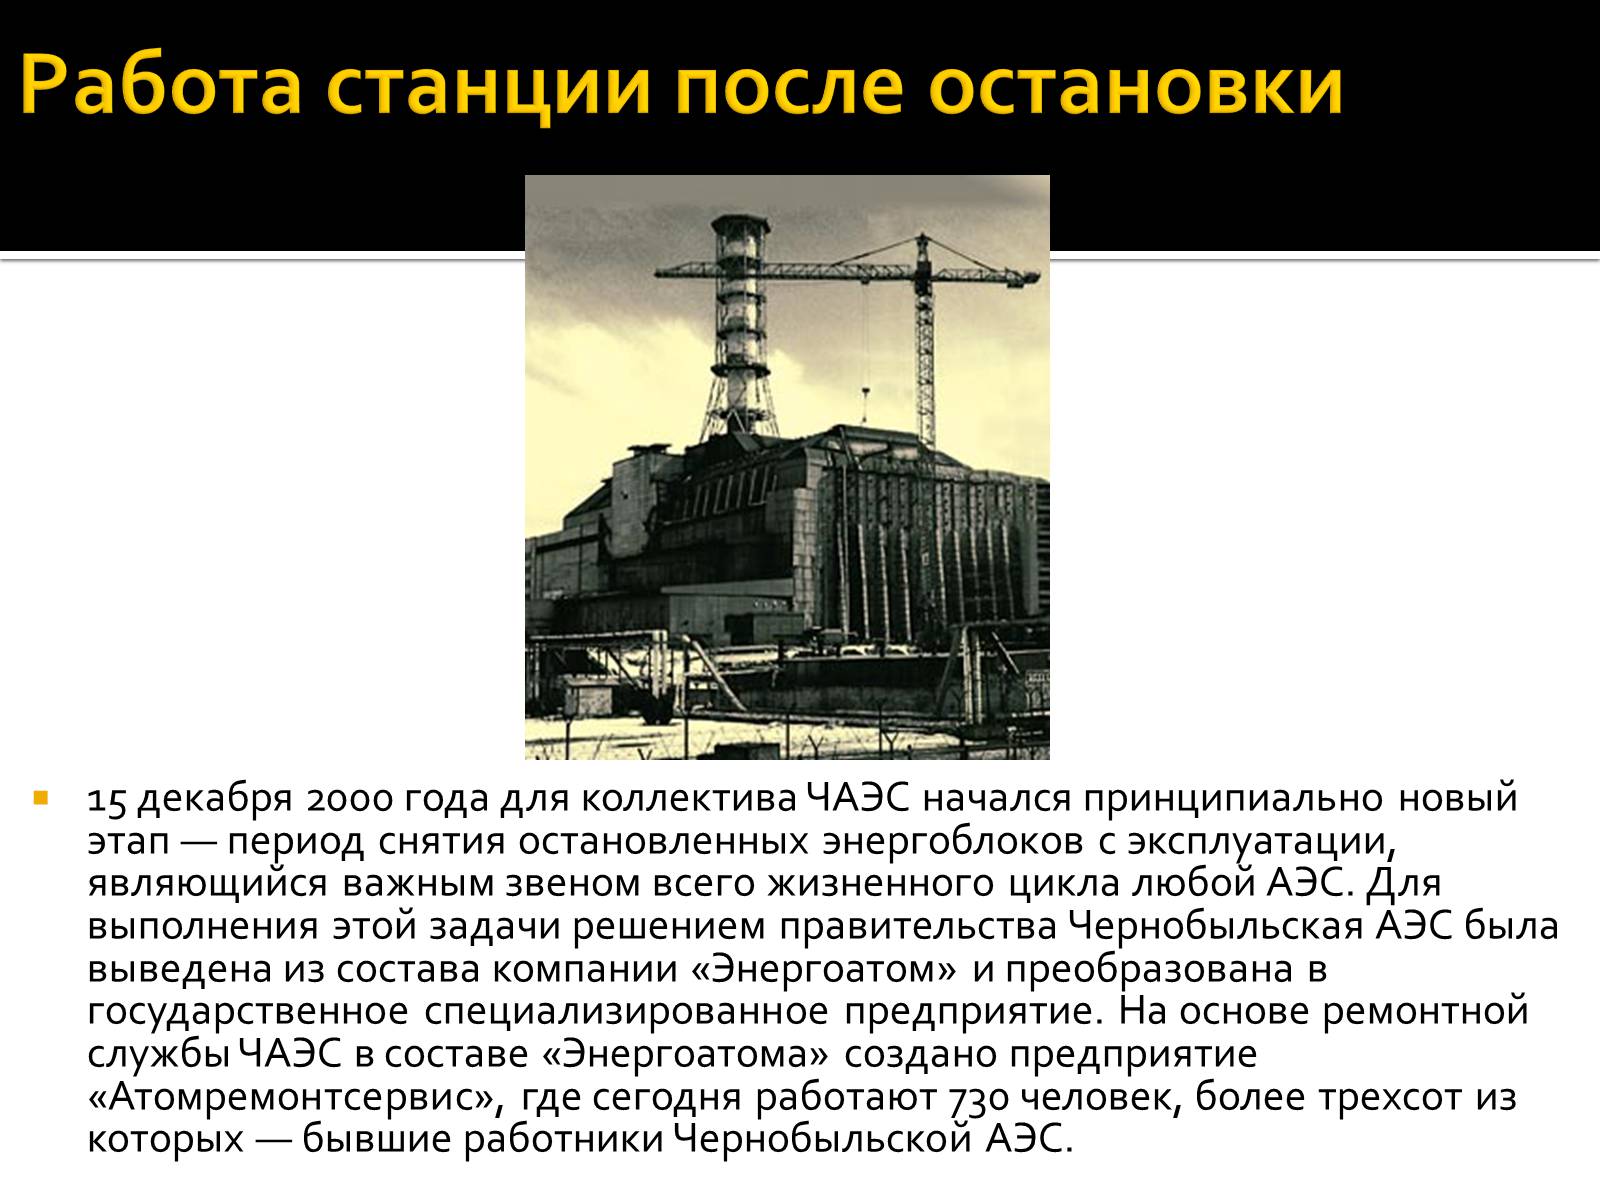 15 Декабря 2000 года Чернобыльская АЭС